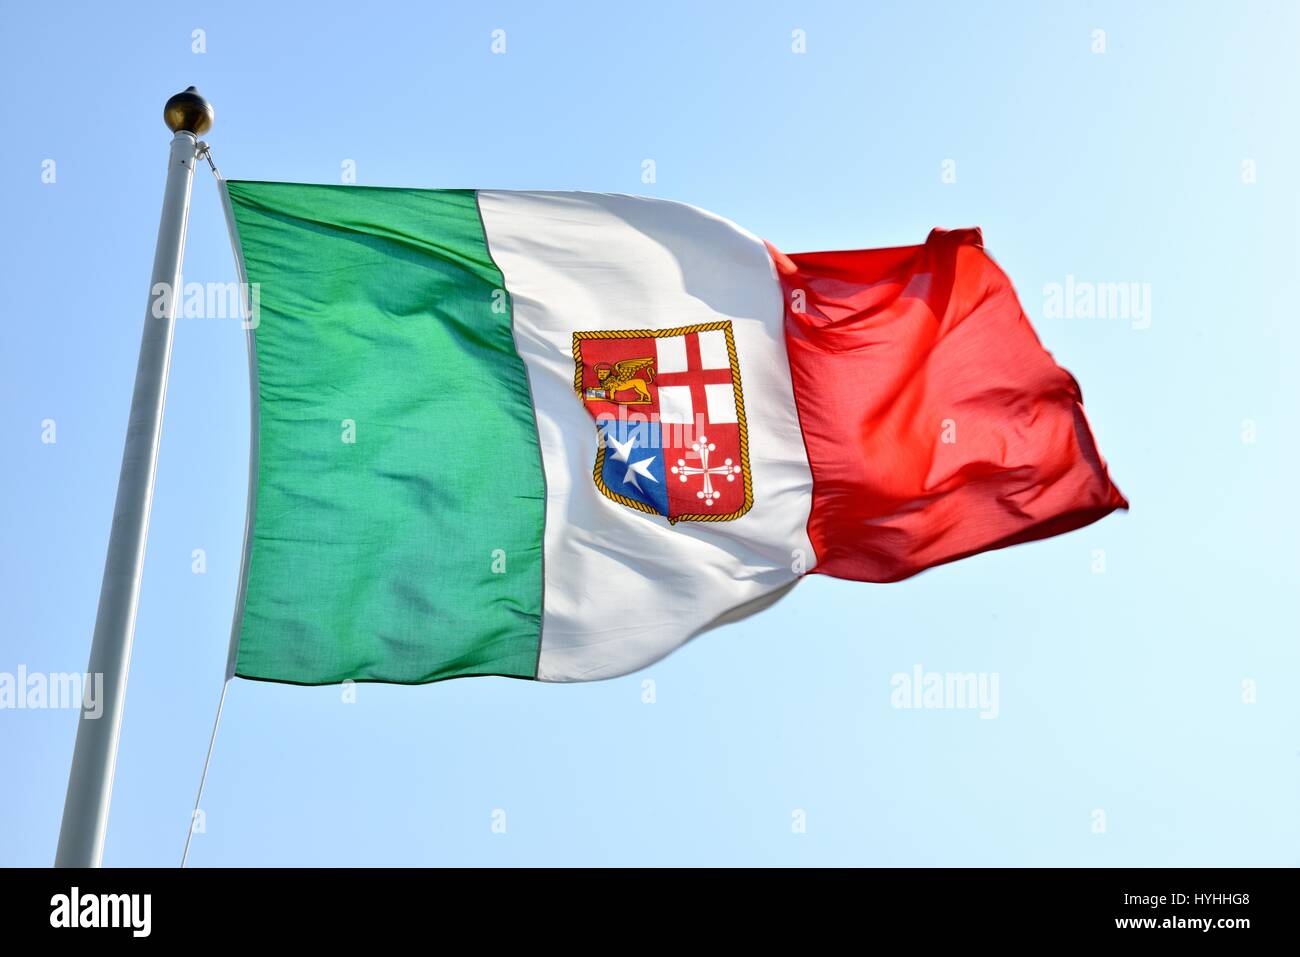 République Maritime Italien drapeau flotter Banque D'Images